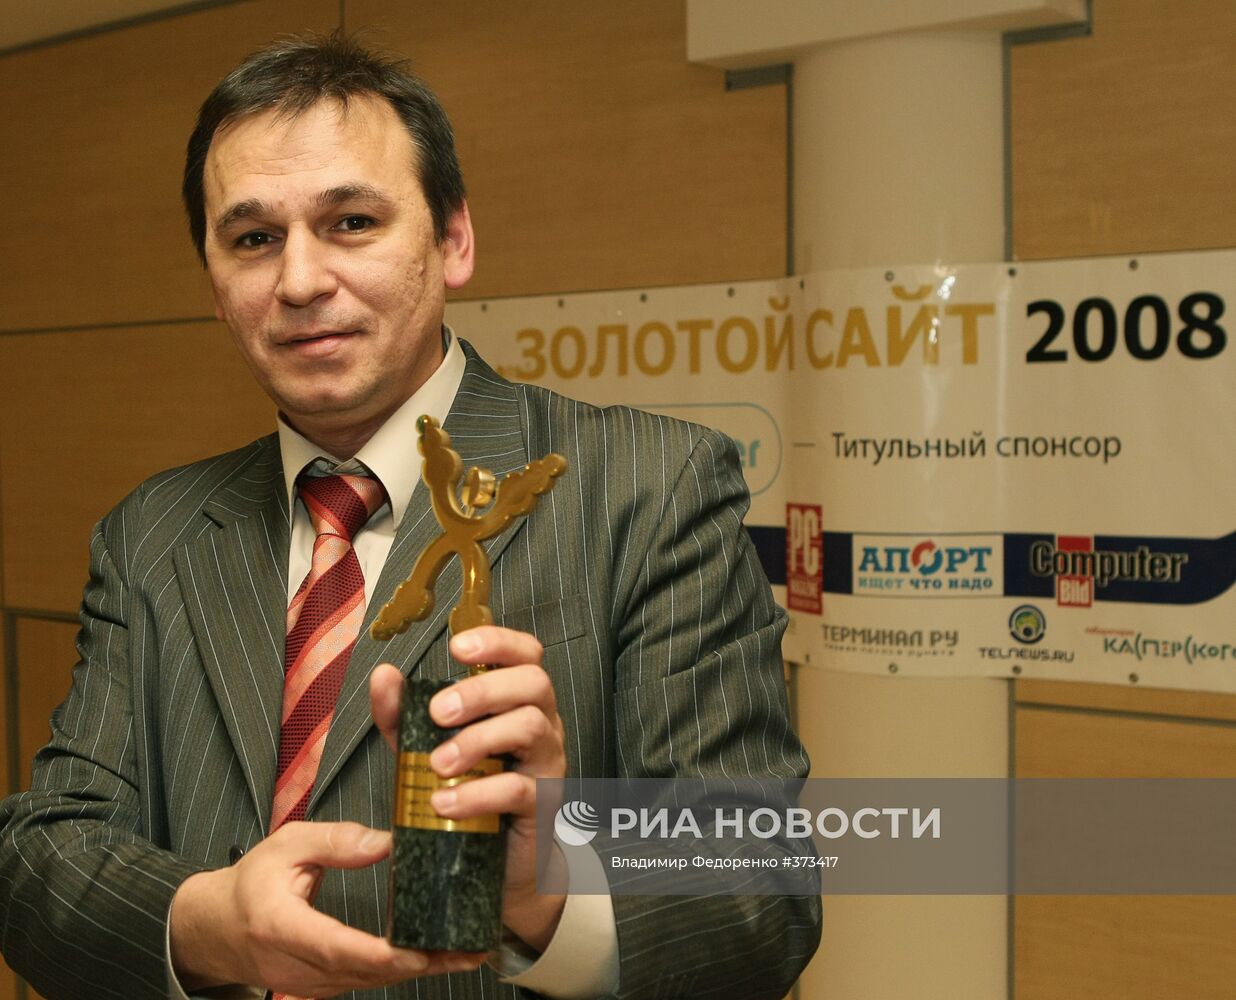 Награждение лауреатов интернет-конкурса "Золотой сайт-2008"